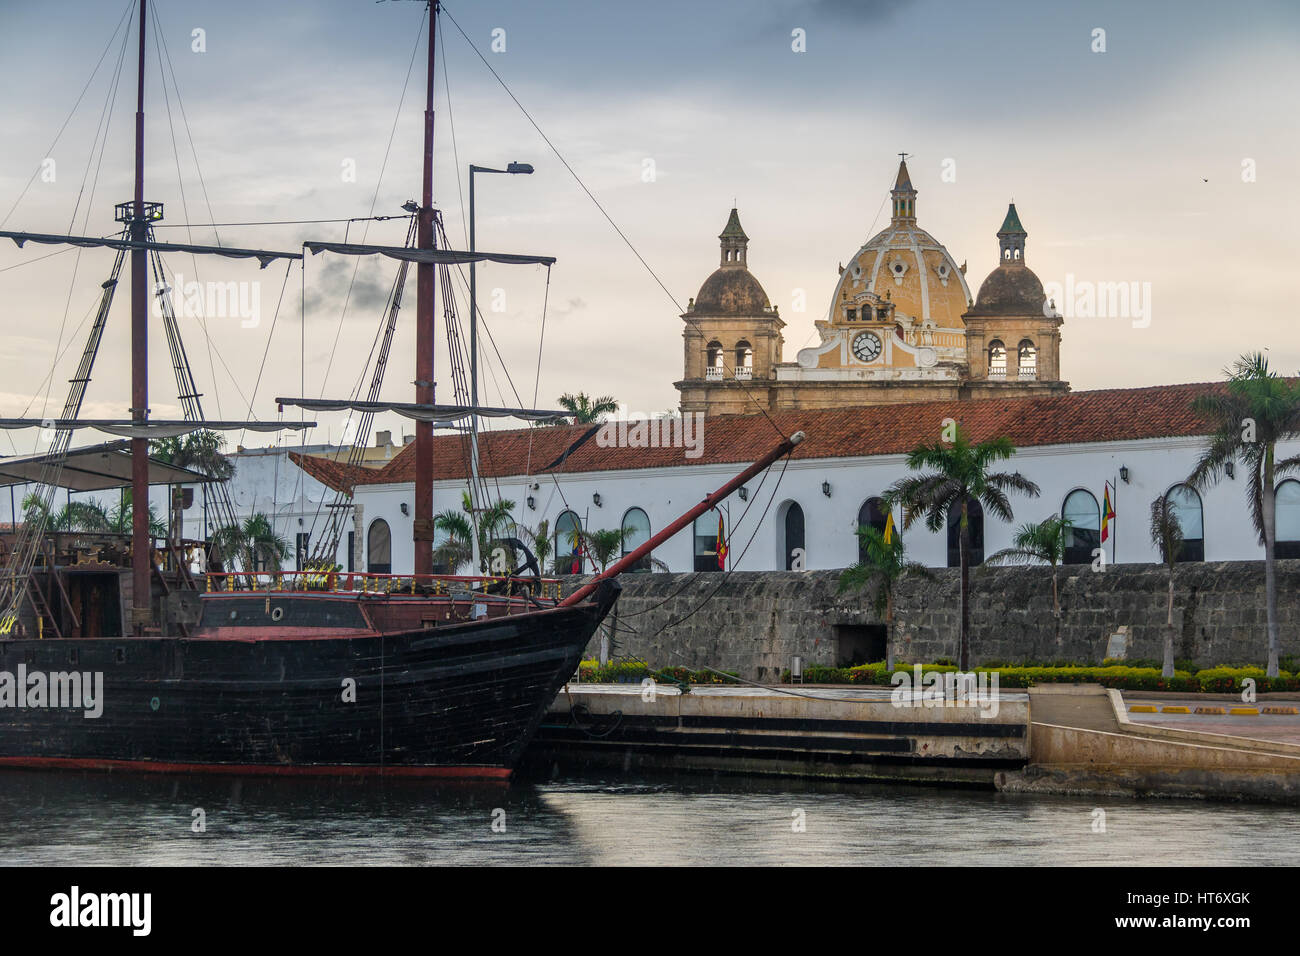 Les dômes de l'église de San Pedro Claver et navire - Cartagena de Indias, Colombie Banque D'Images